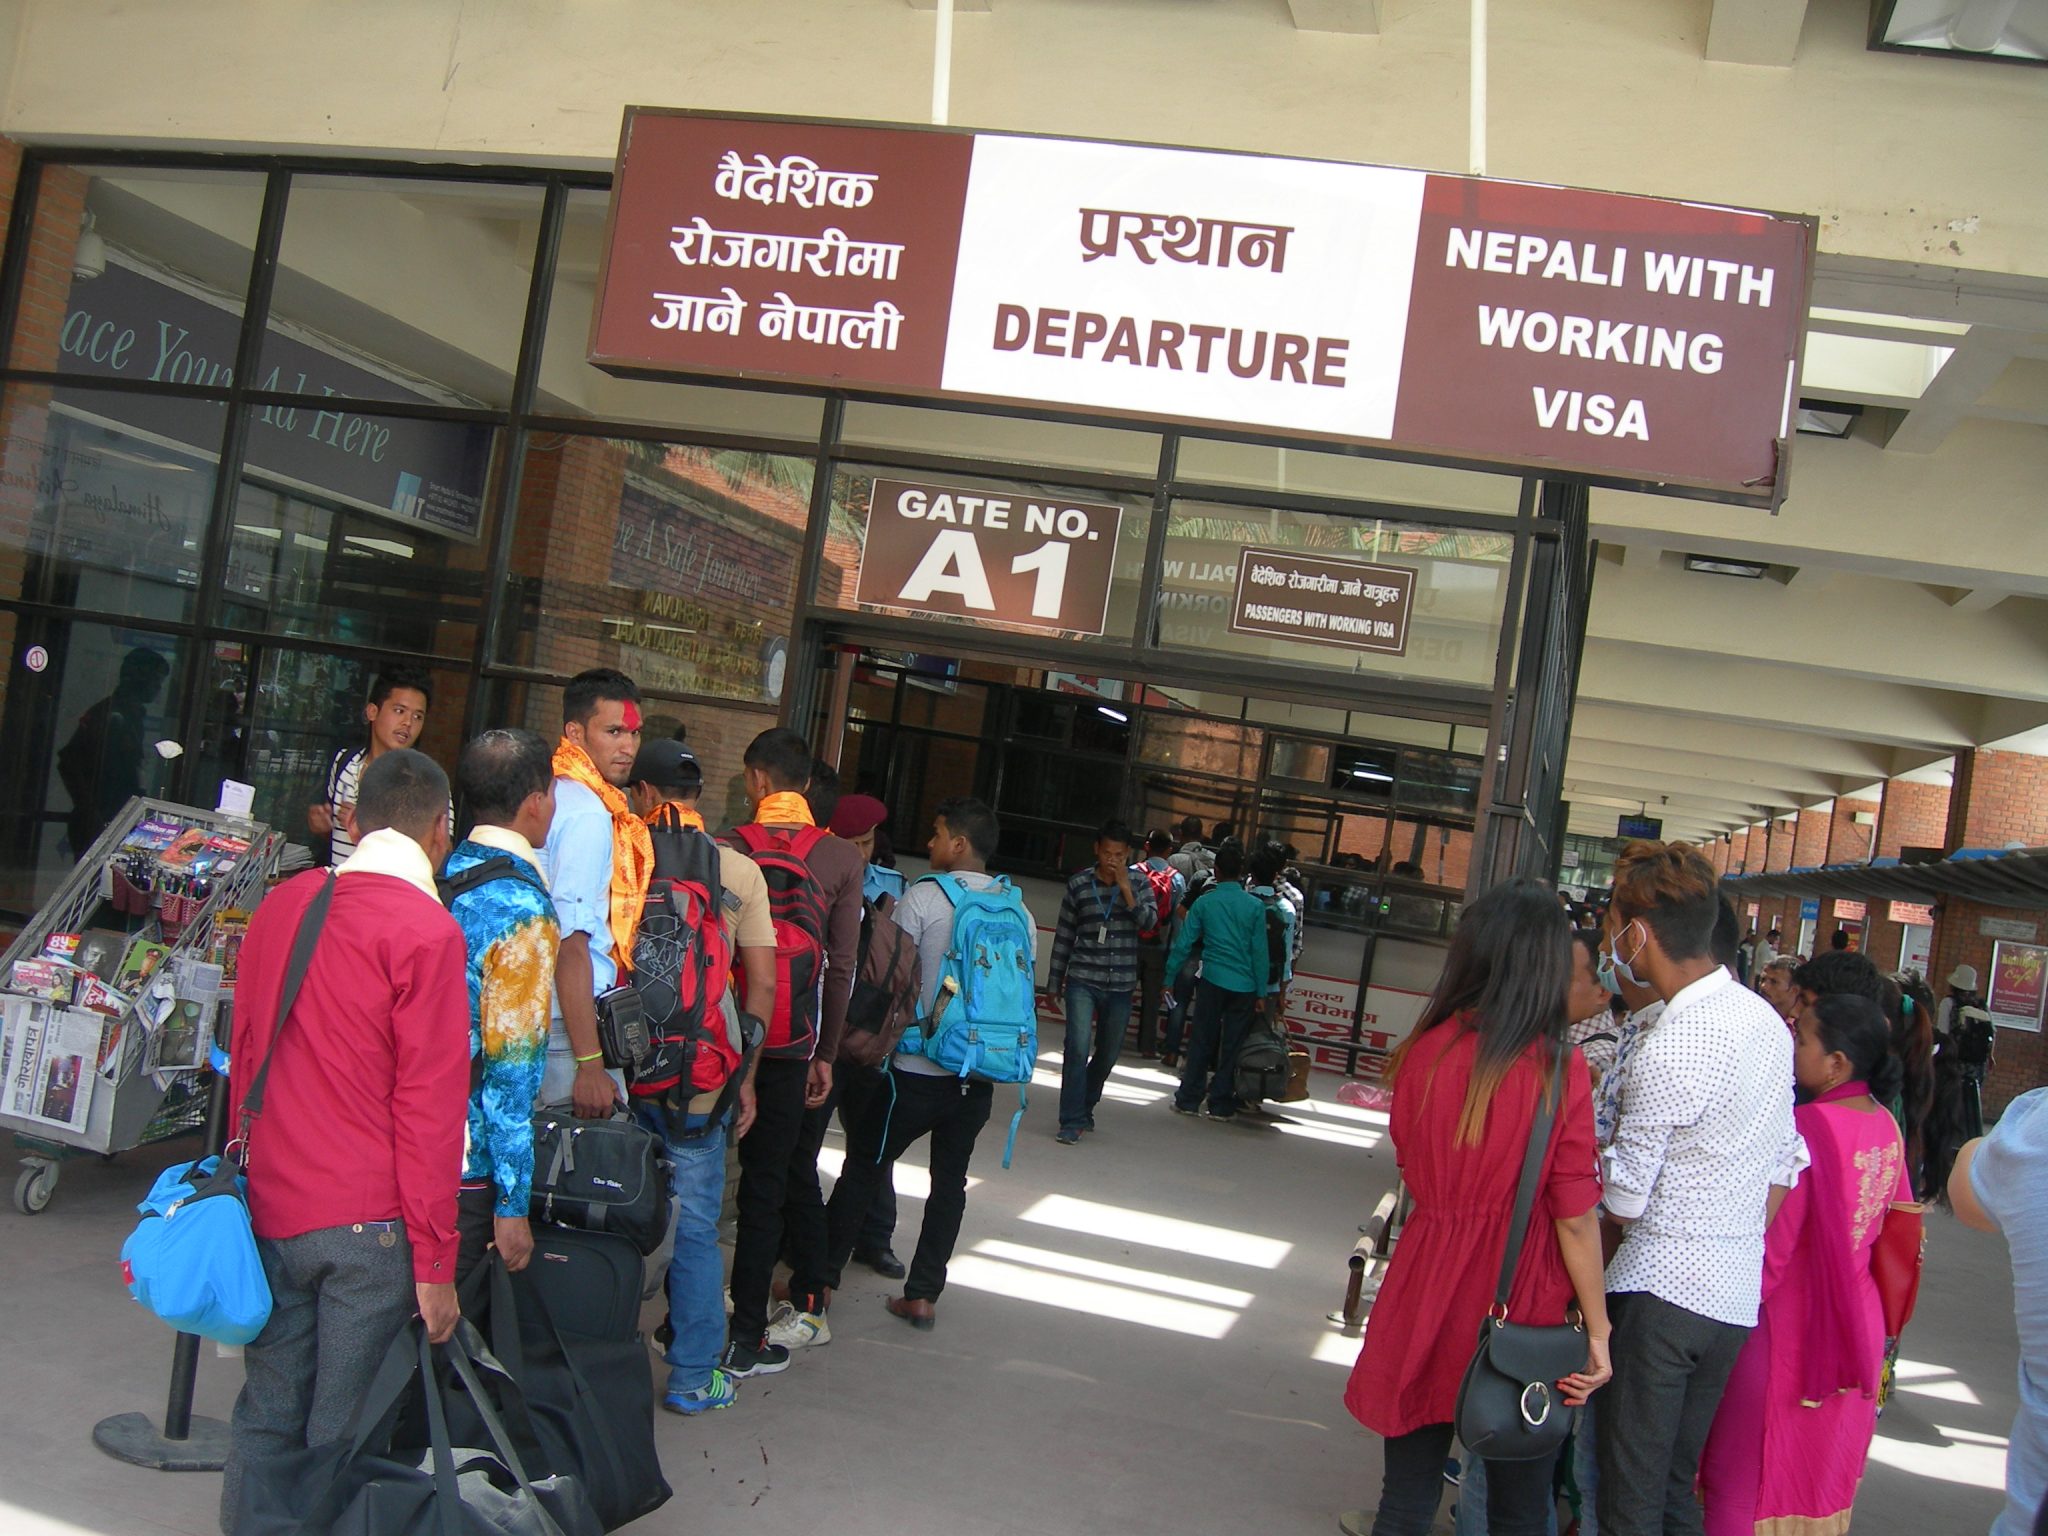 नेपालीहरुमाथि यात्रा प्रतिबन्ध बढ्दो, वैदेशिक रोजगारमा जाने कामदार लामो समय प्रभावित हुने संकेत